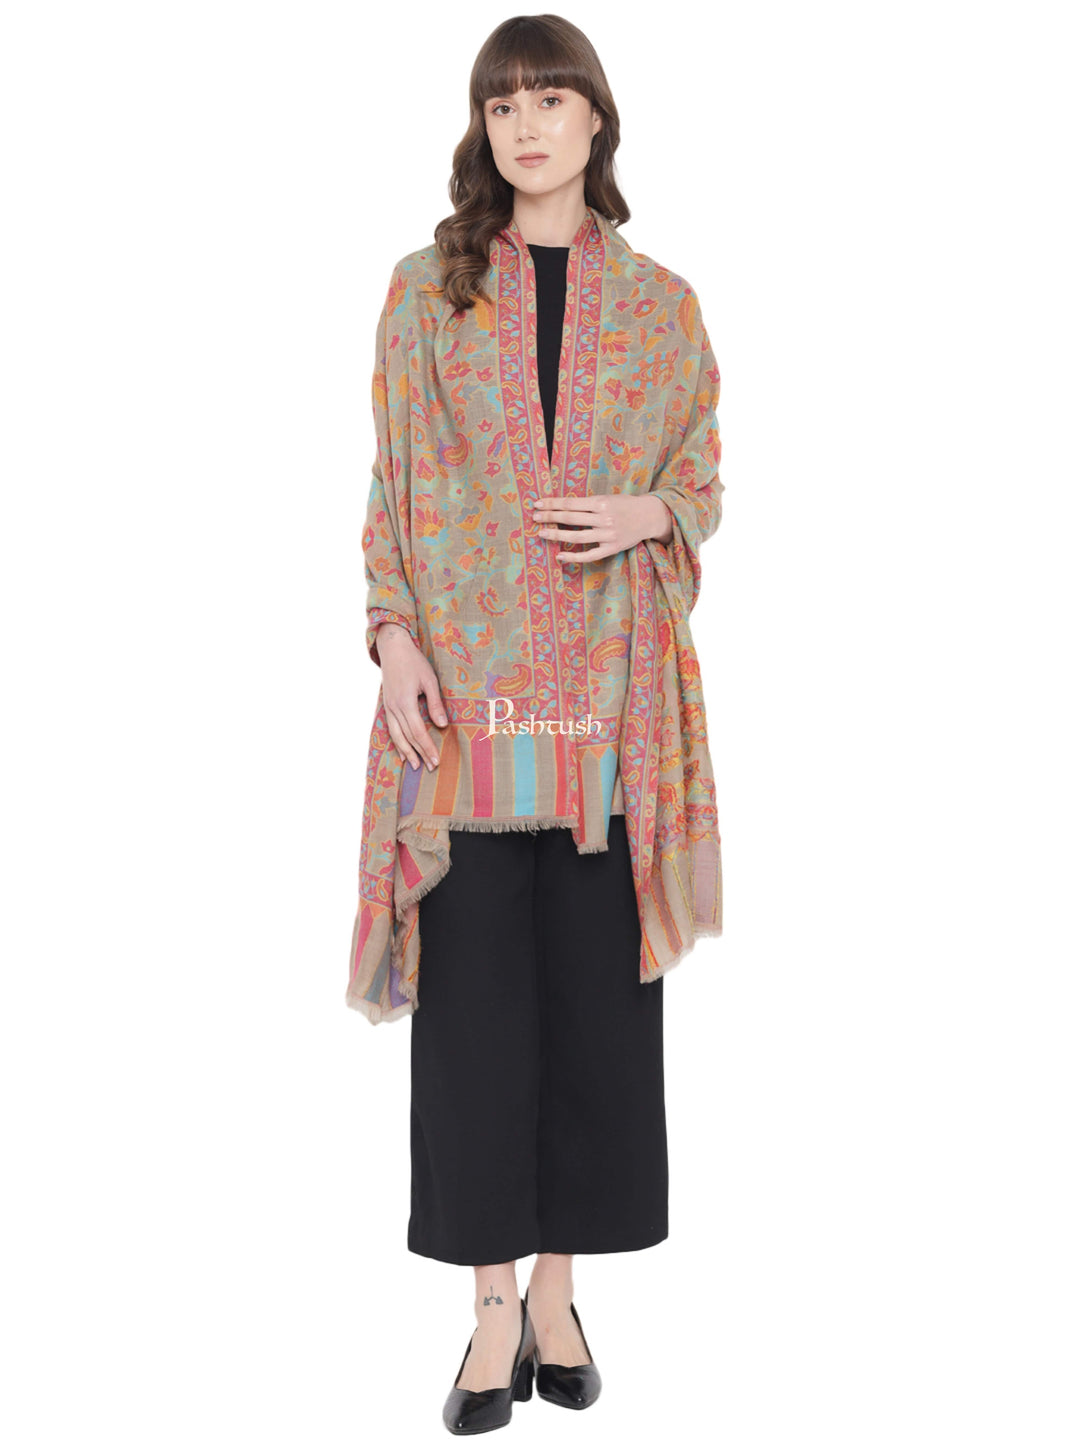 Pashtush India Womens Shawls Pashtush Womens Fine Wool Shawl, Ethnic Weave , Extra Soft and Warm, Light Weight, Pastel Hues